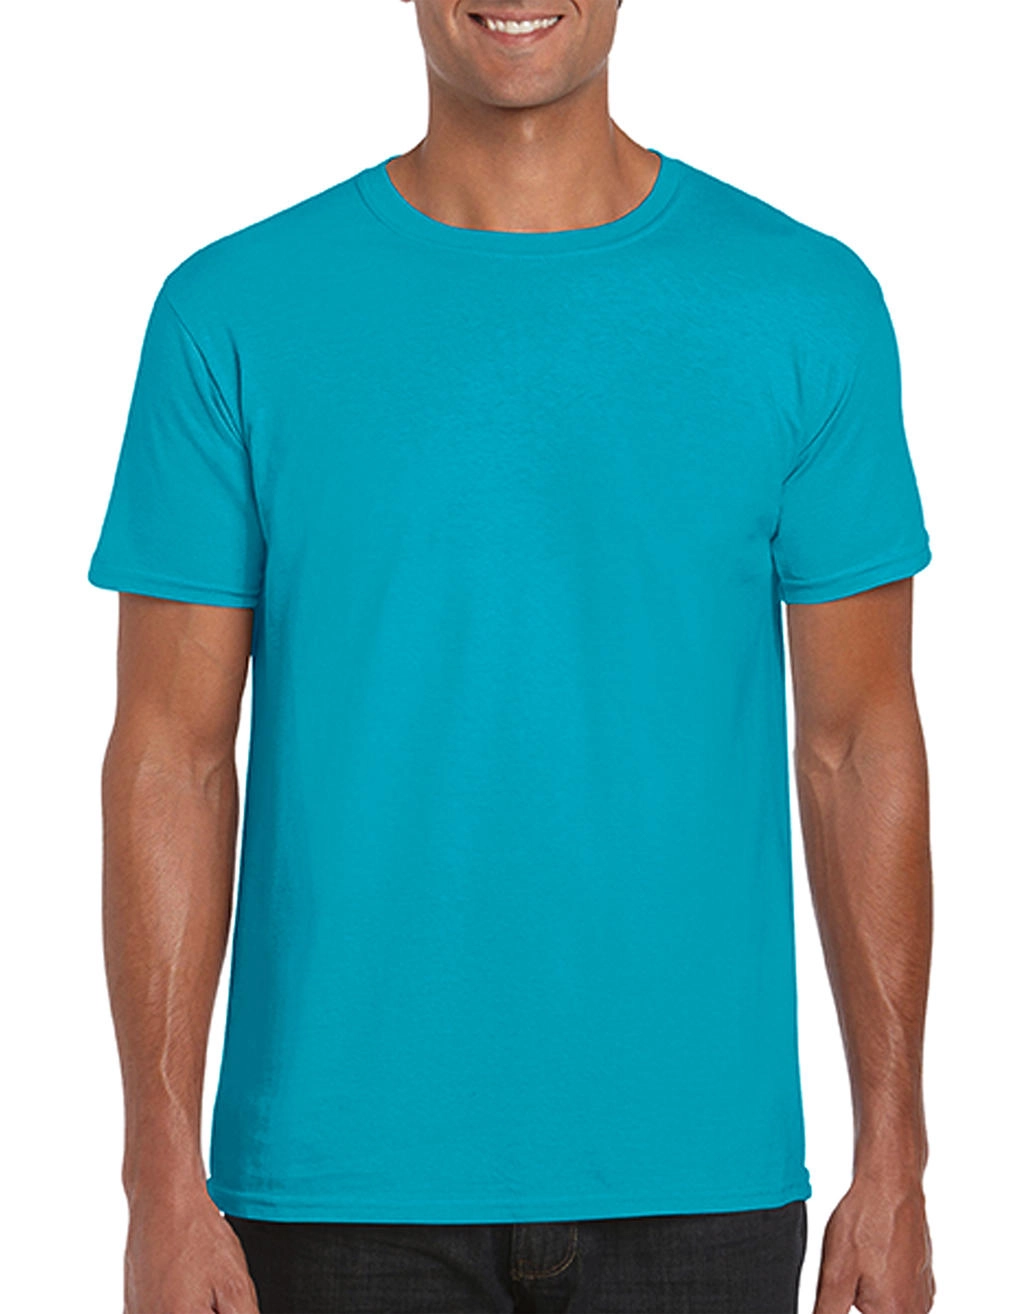 Softstyle® Ring Spun T-Shirt zum Besticken und Bedrucken in der Farbe Tropical Blue mit Ihren Logo, Schriftzug oder Motiv.